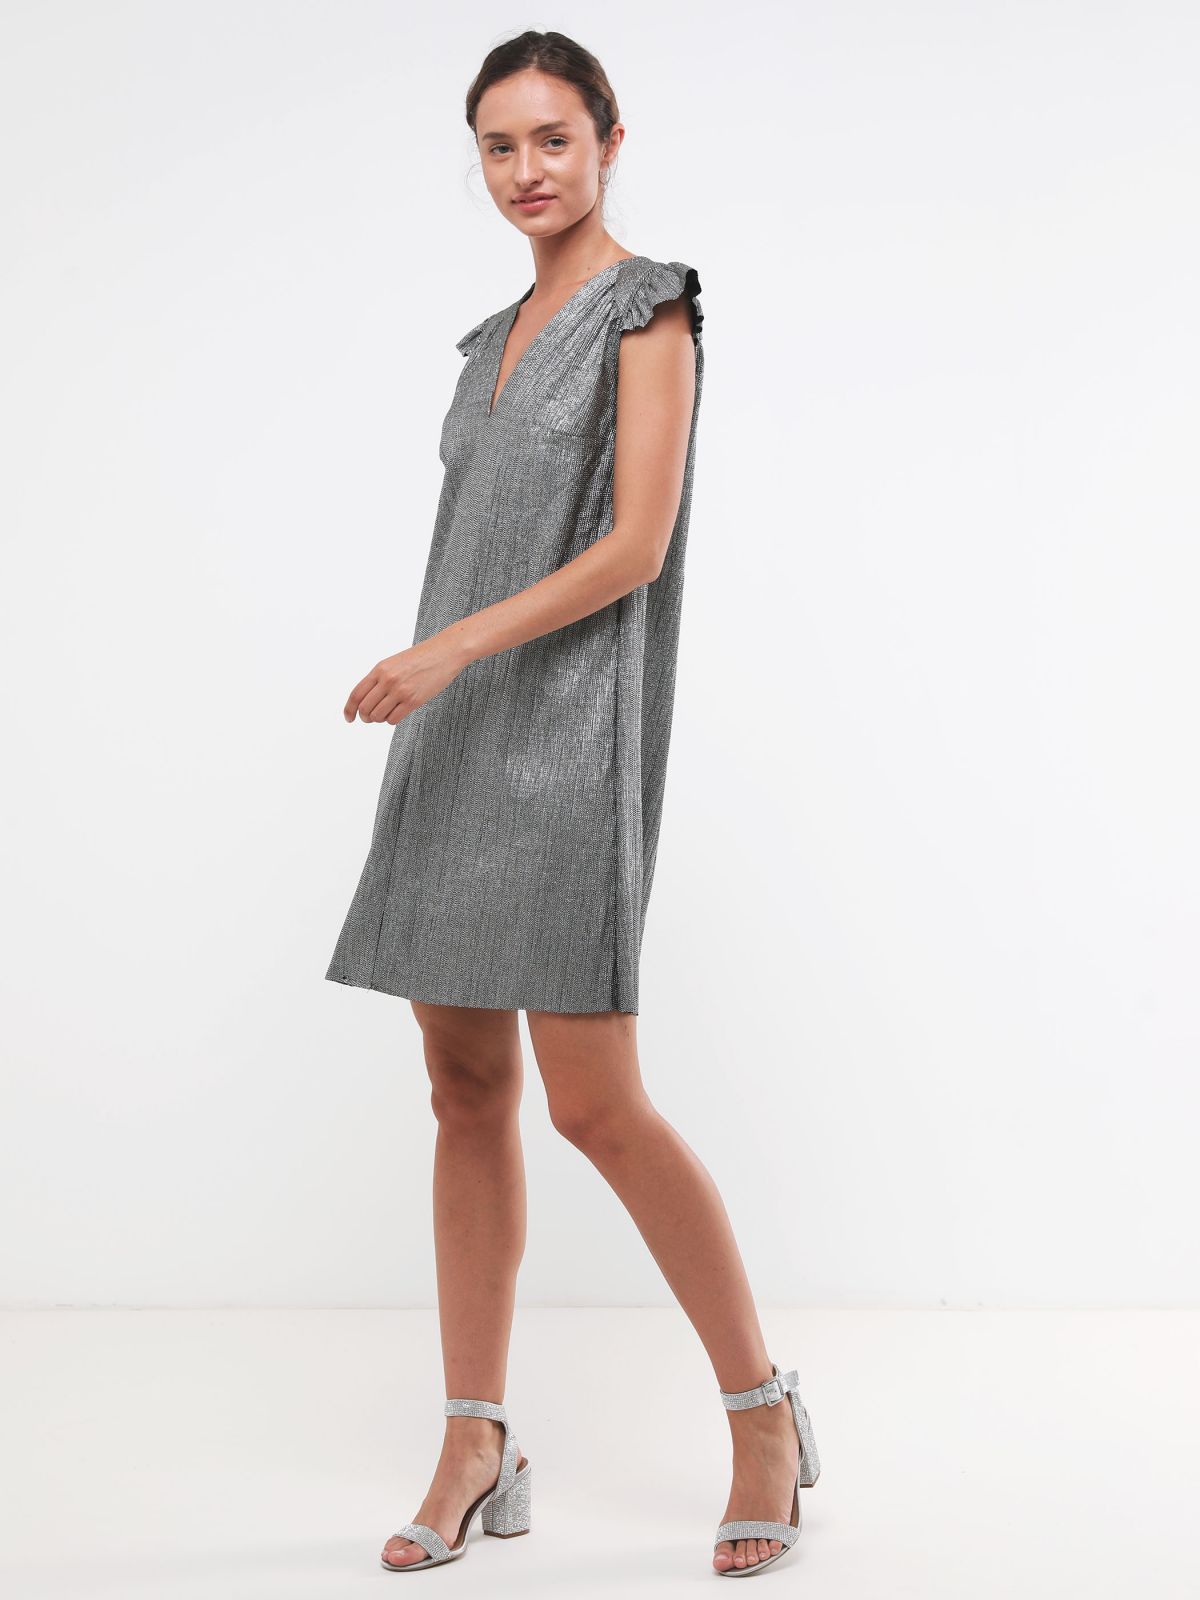  שמלת מיני גליטר עם מלמלה X שושיין של YANGA